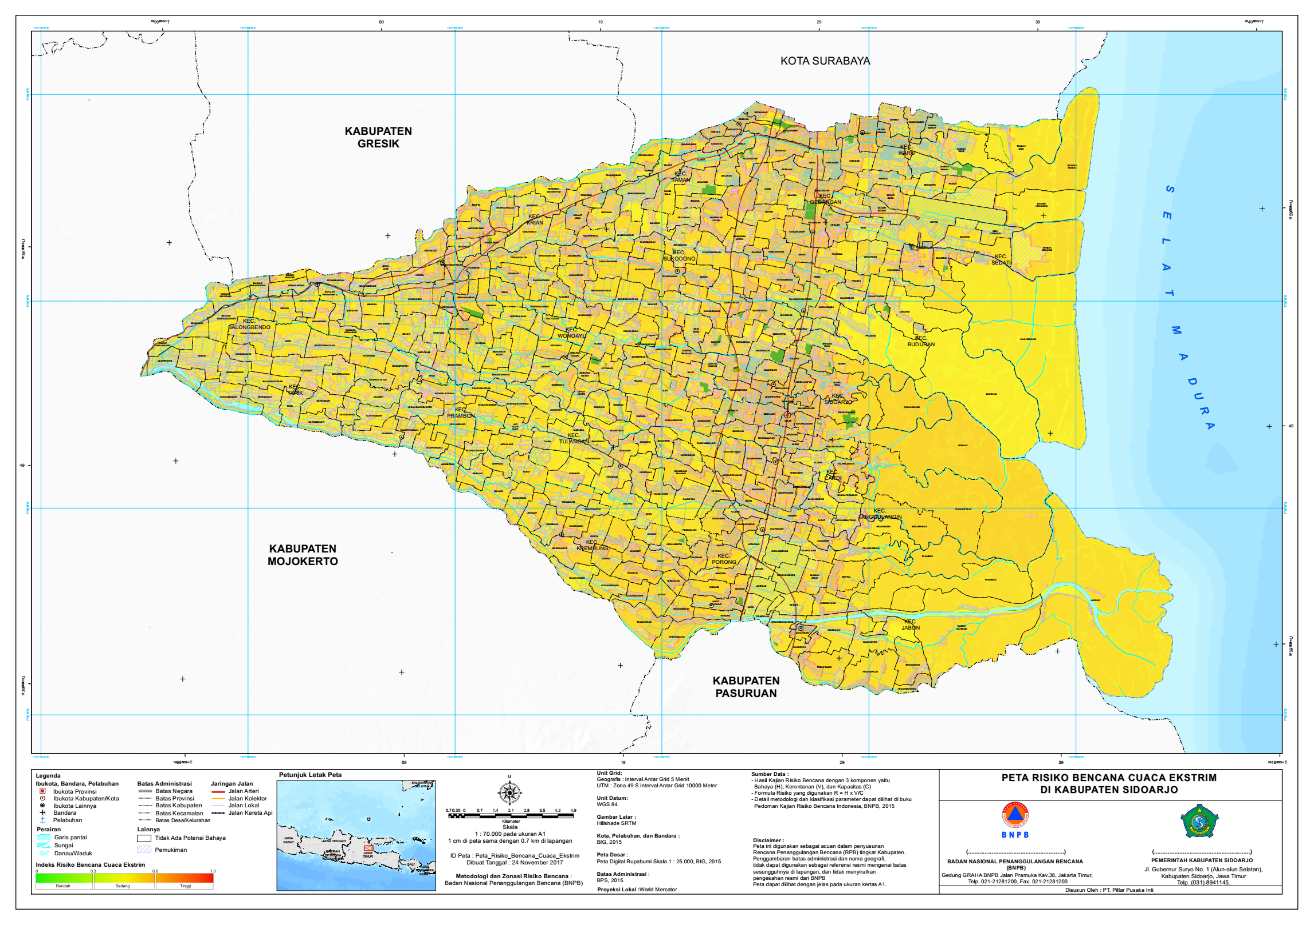 Peta Risiko Bencana Cuaca Ekstrim di Kabupaten Sidoarjo